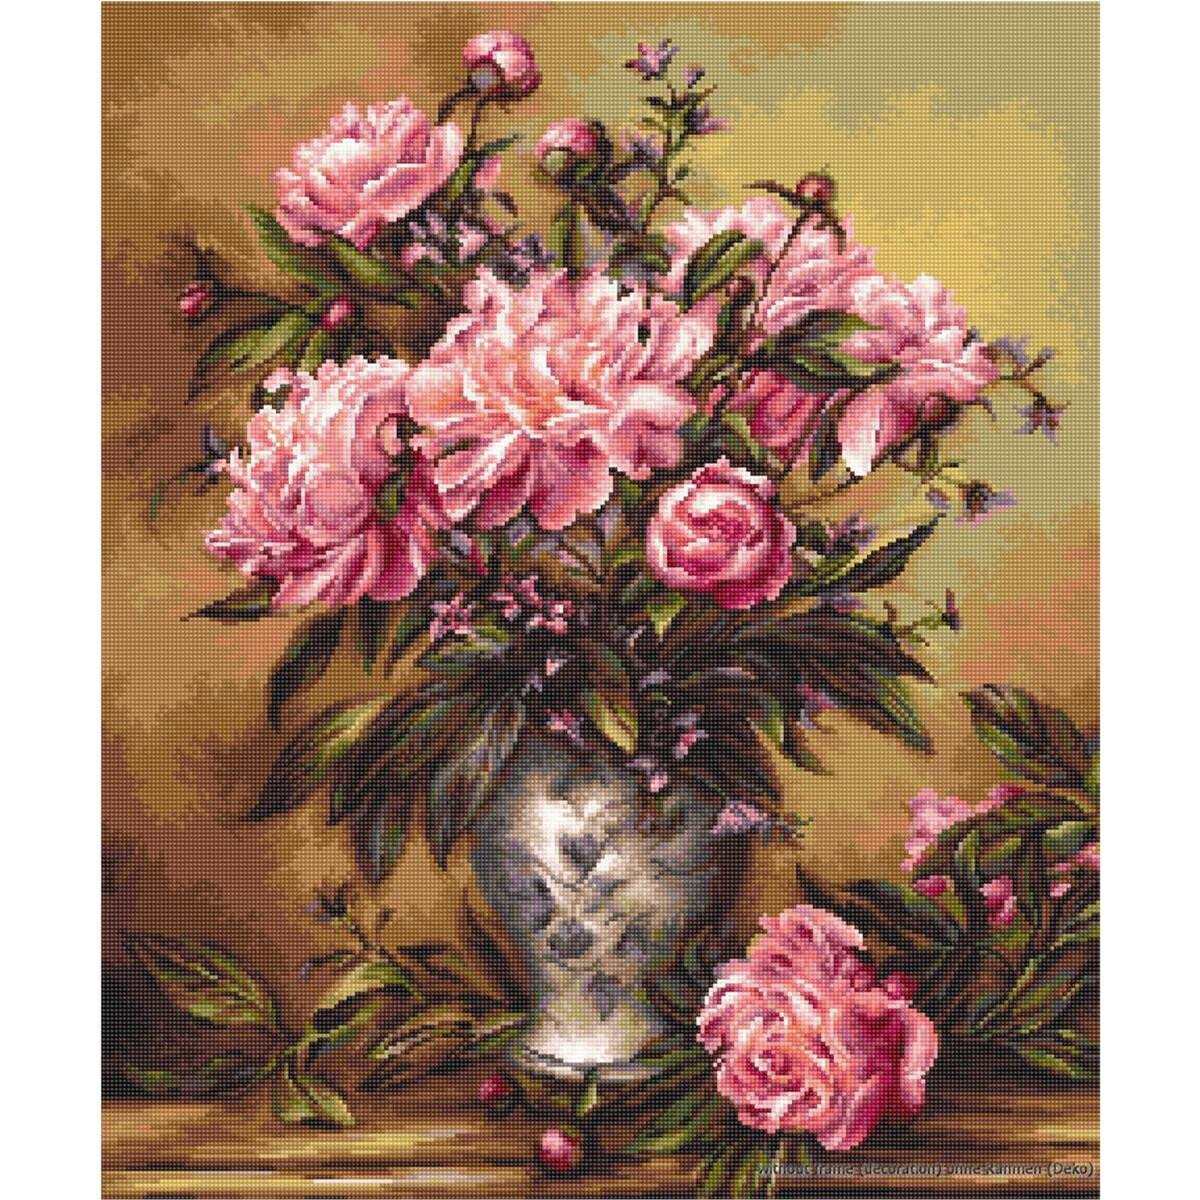 Детальная картина с изображением розовых пионов и бутонов...